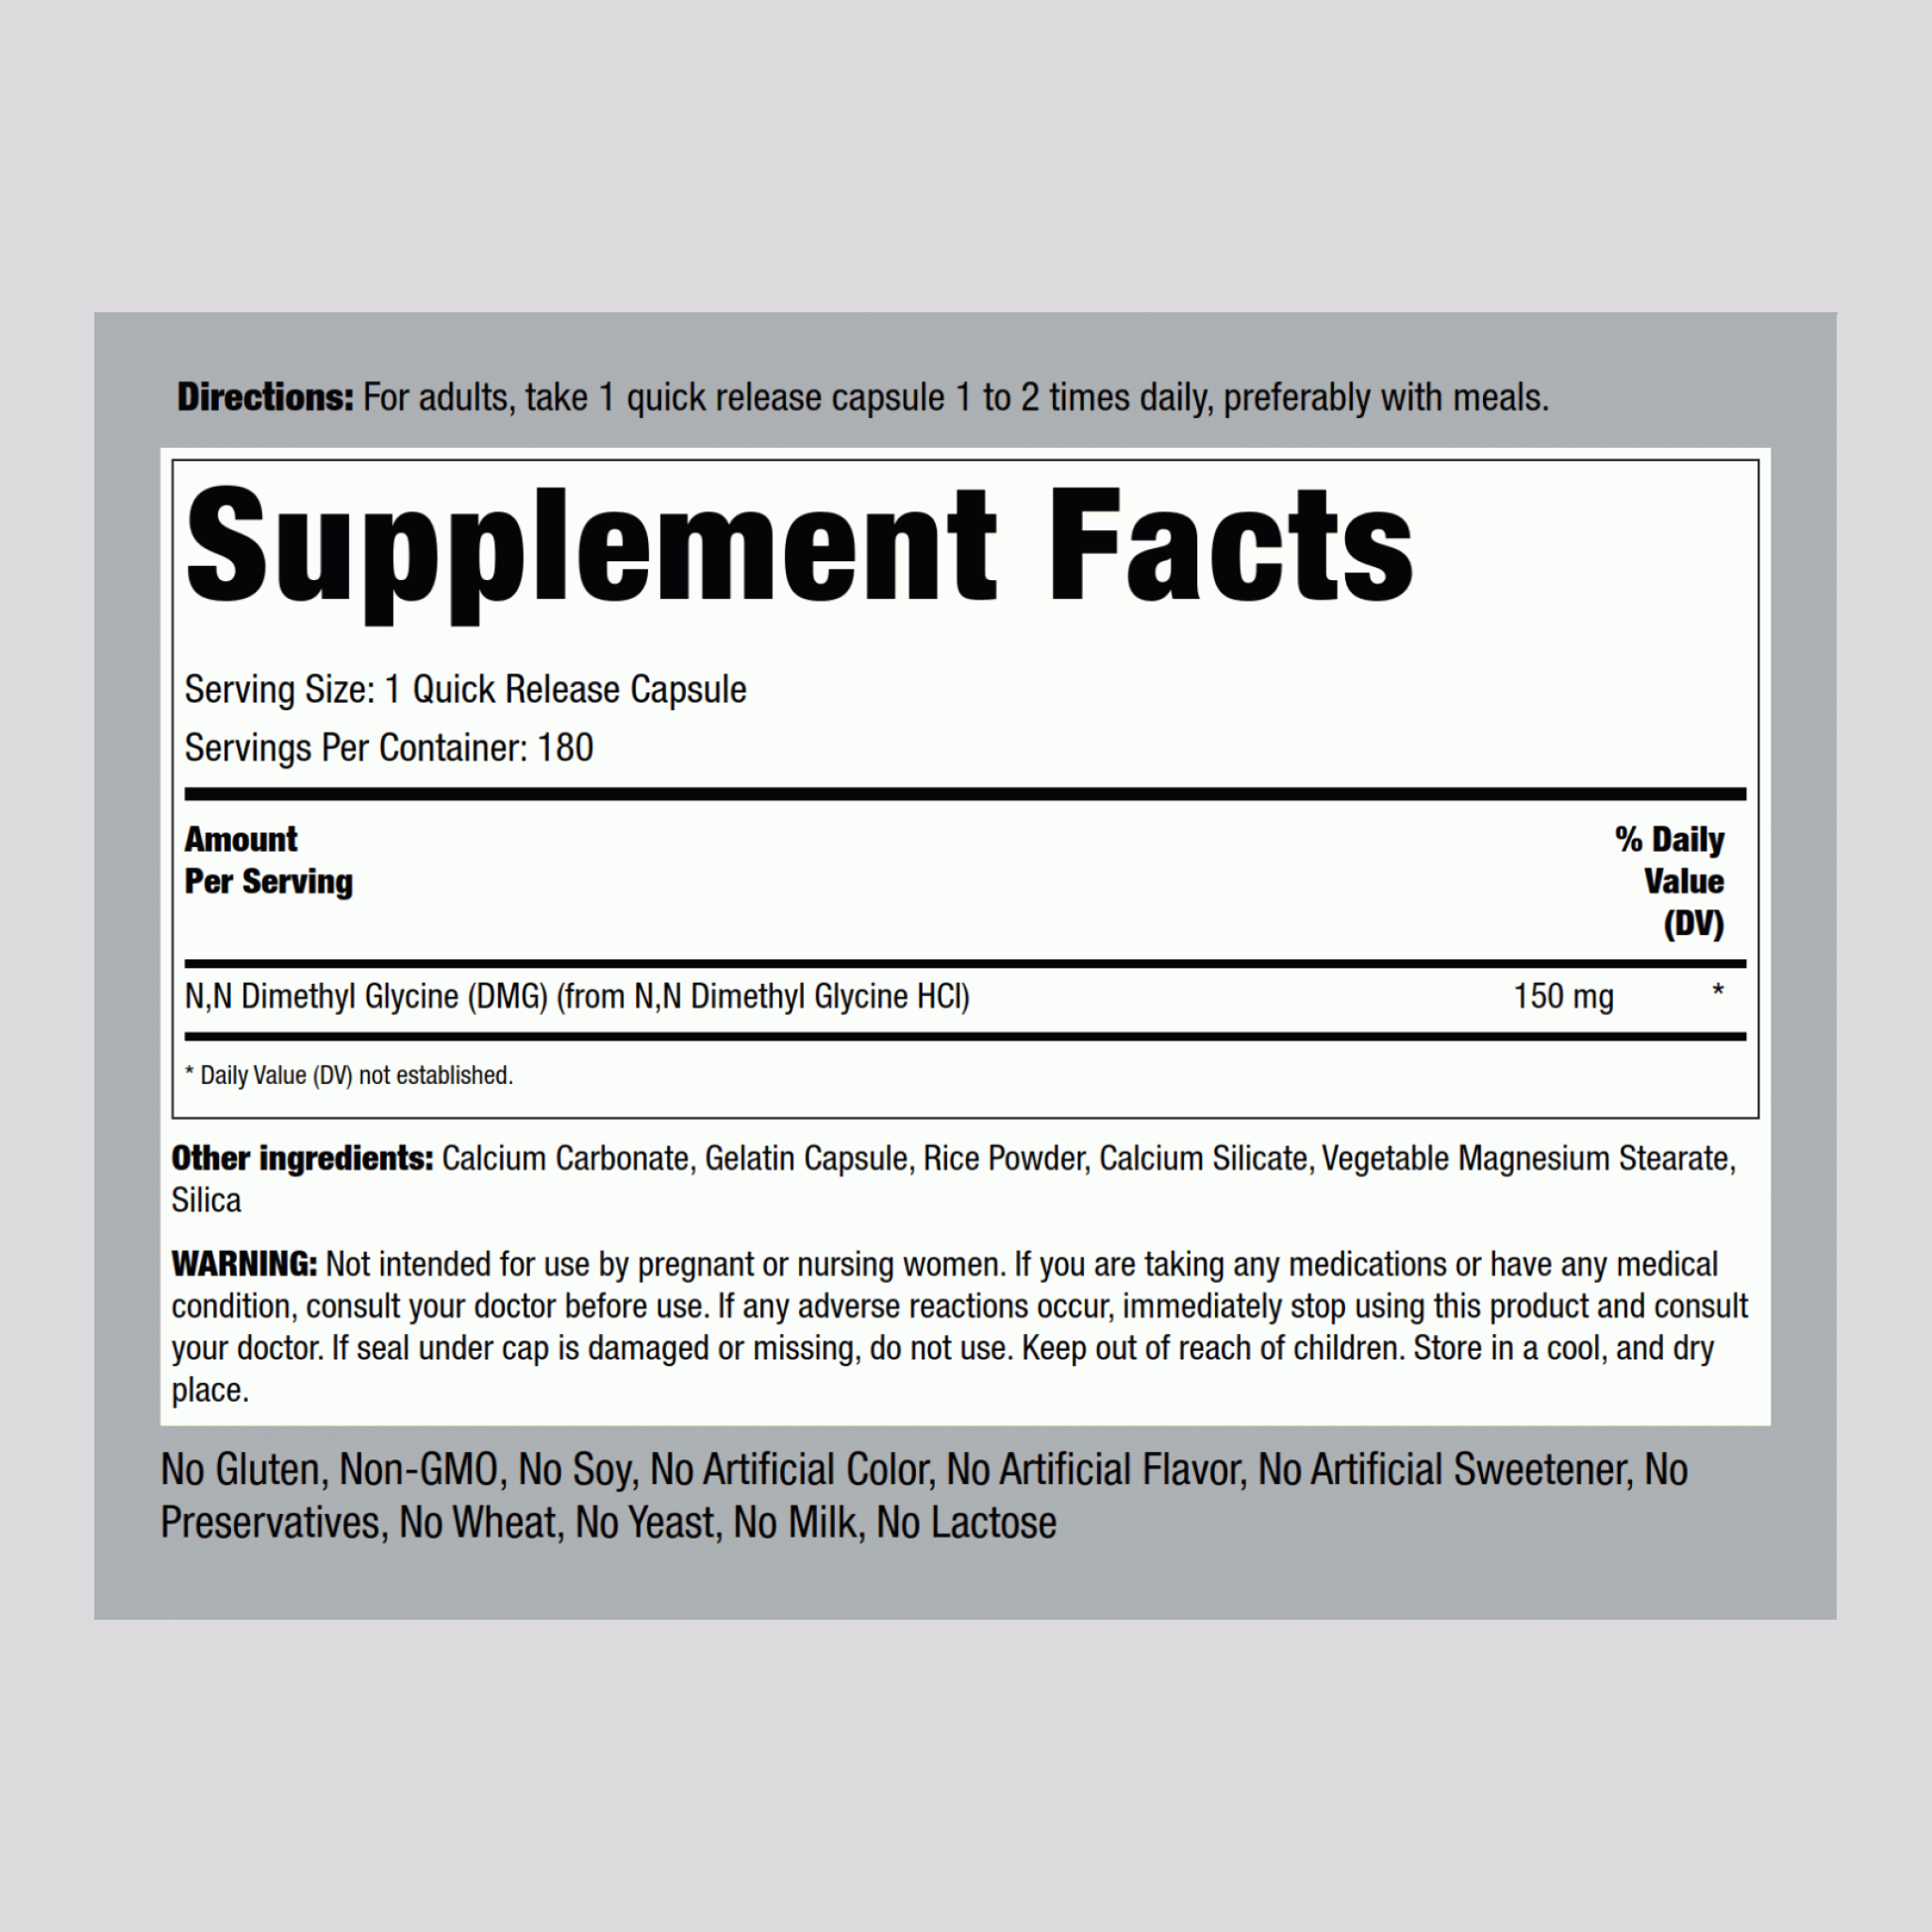 潘氨酸鈣片 (B-15)(DMG)  150 mg 180 素食專用錠劑     